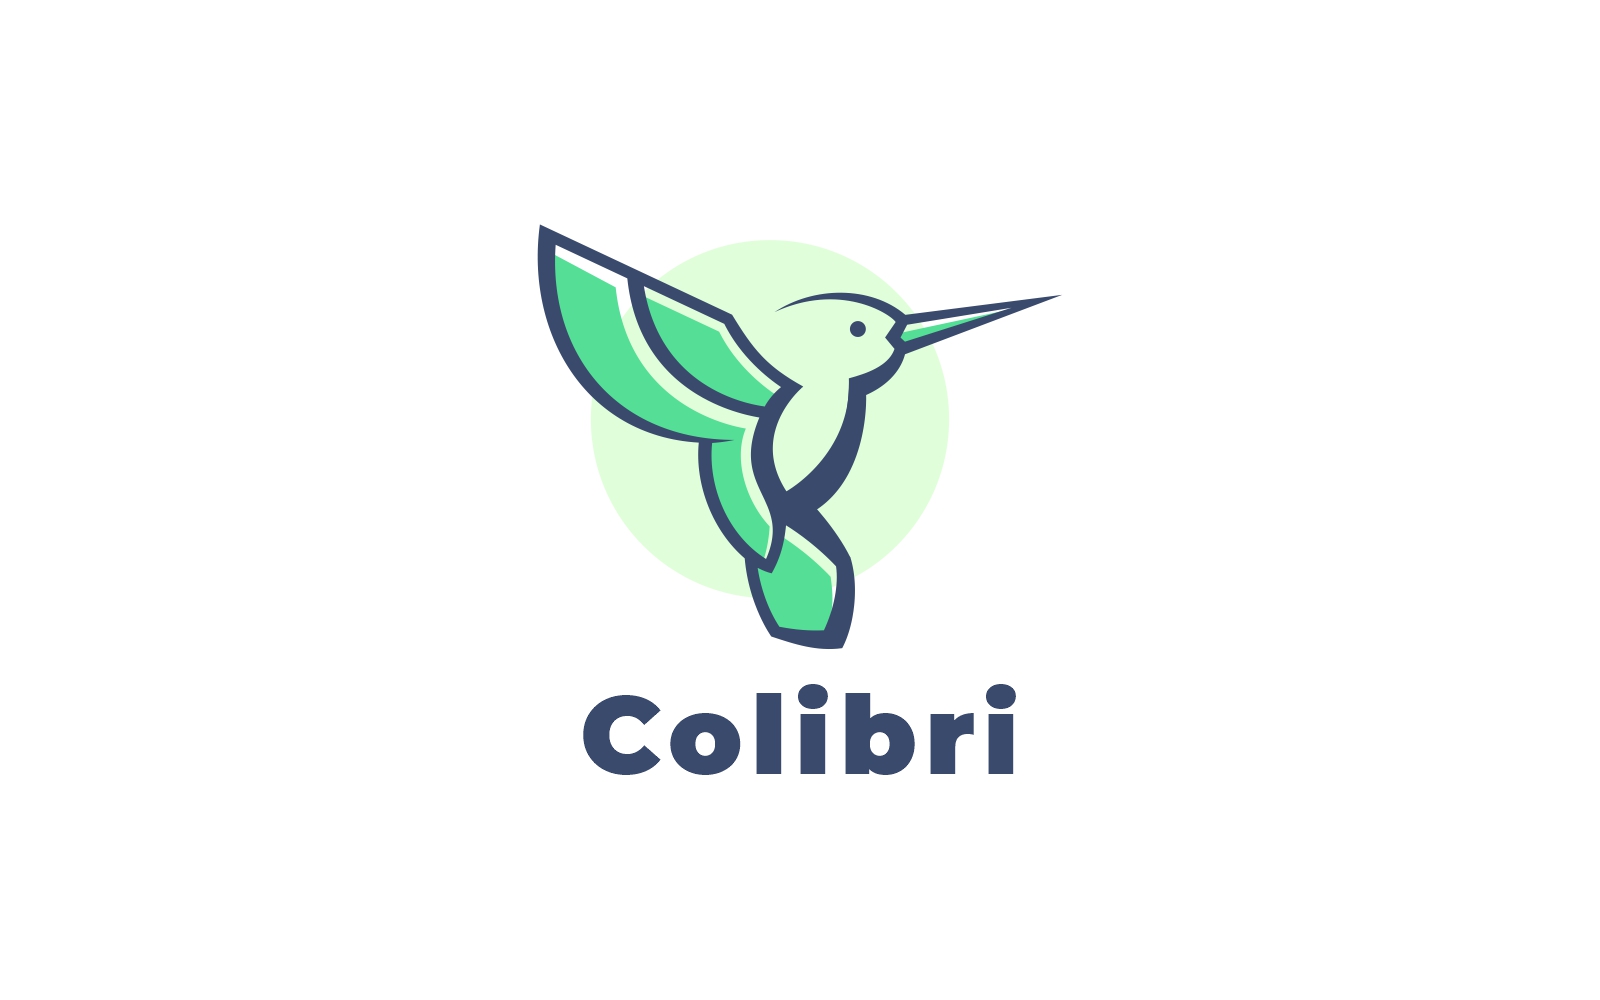 Colibri Simple Mascot Logo Style